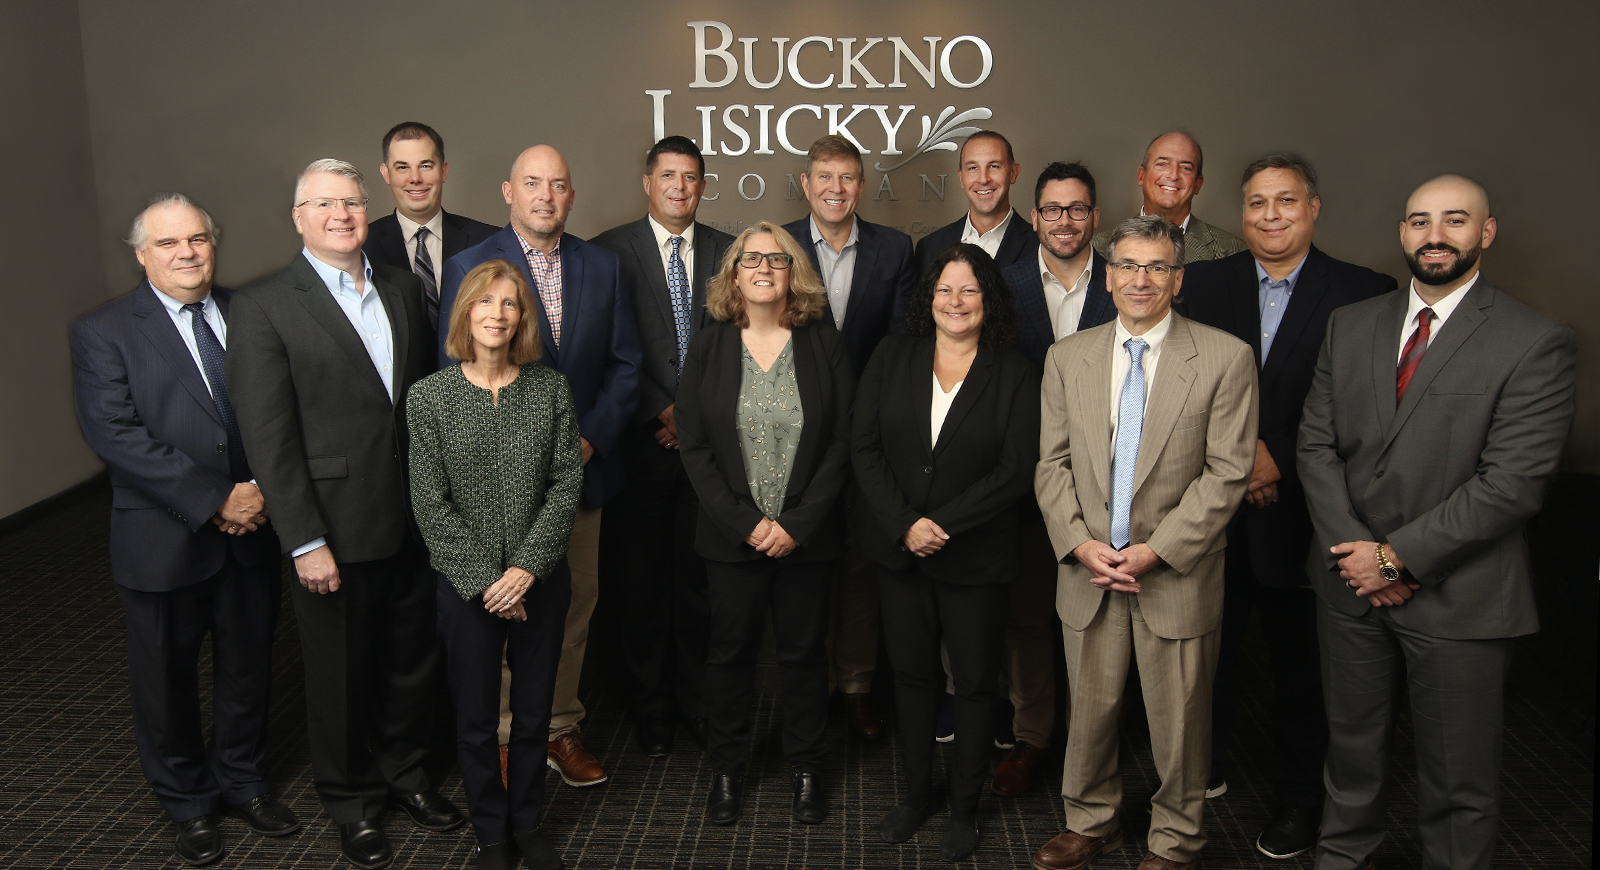 Buckno Lisicky & Company Leadership